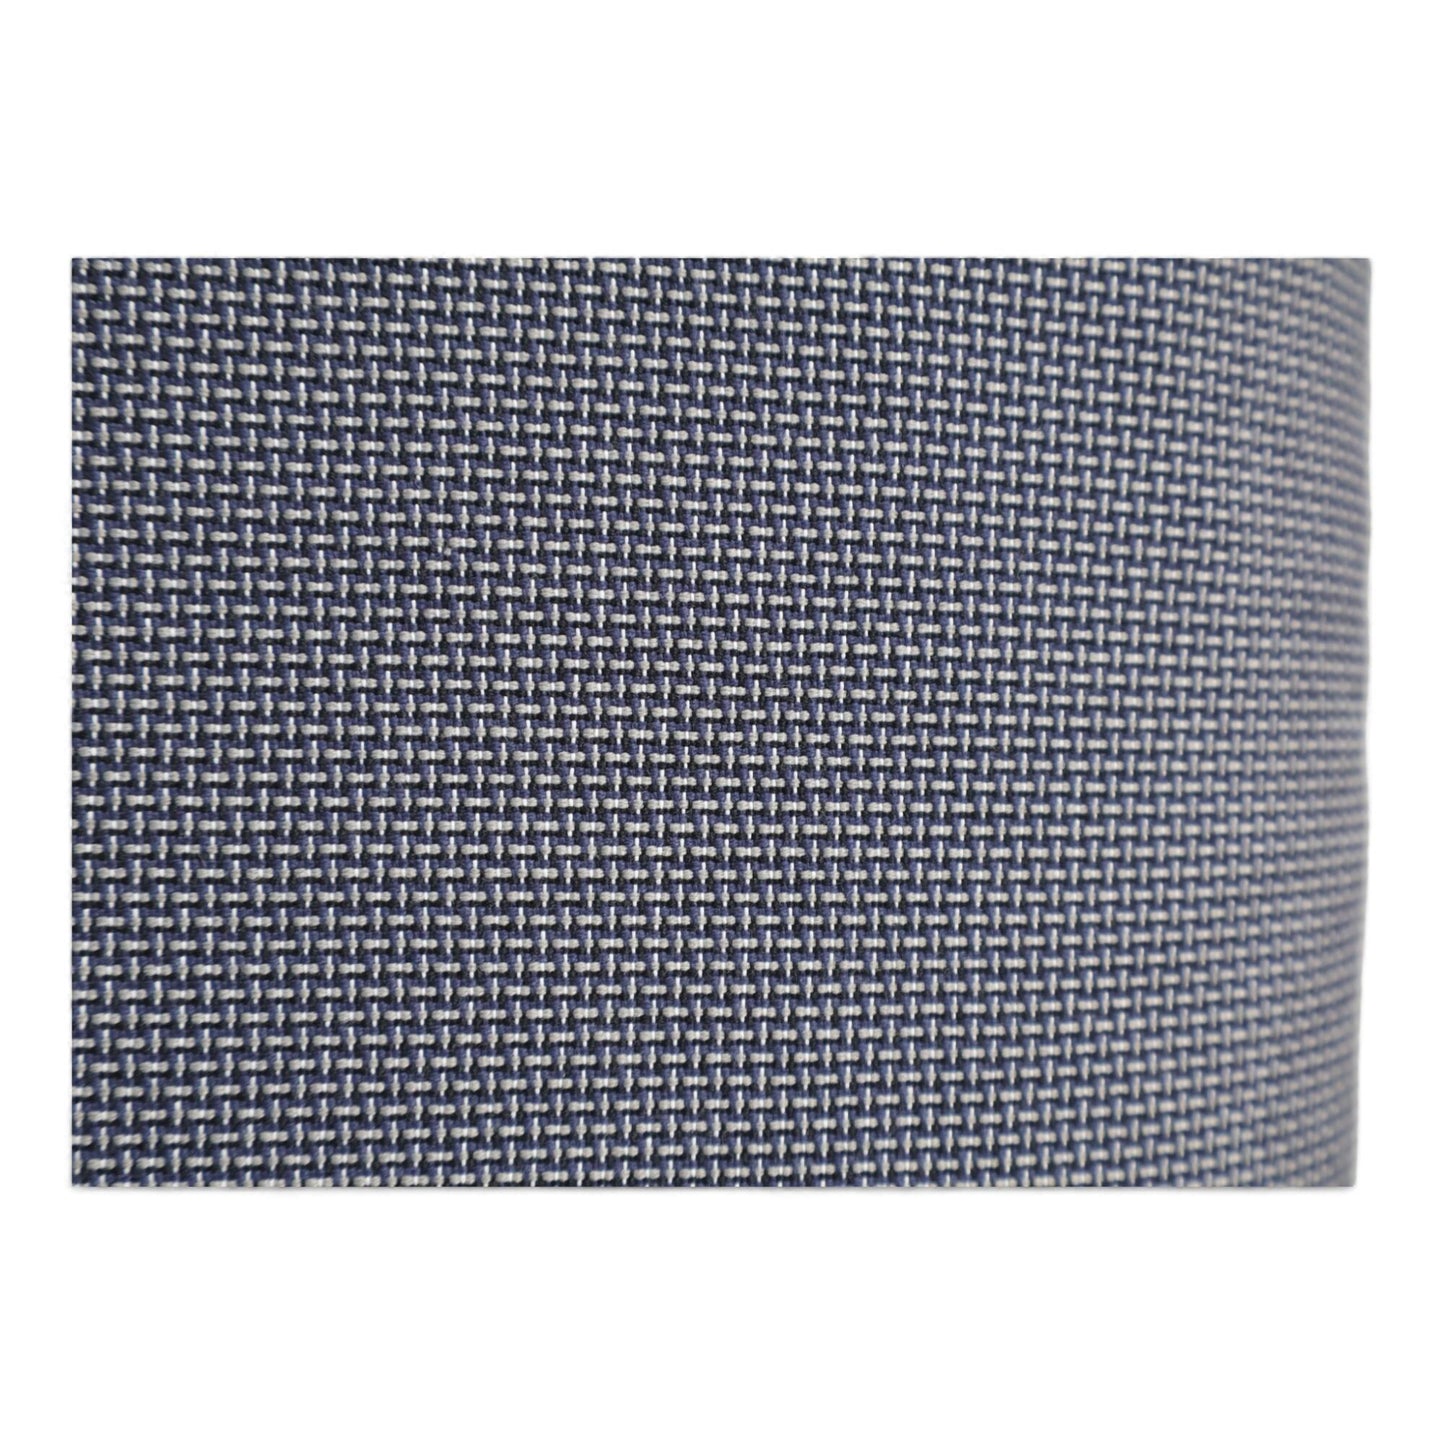 Nyrenset | IKEA Klippan 2-seter sofa i mørk grå/blå